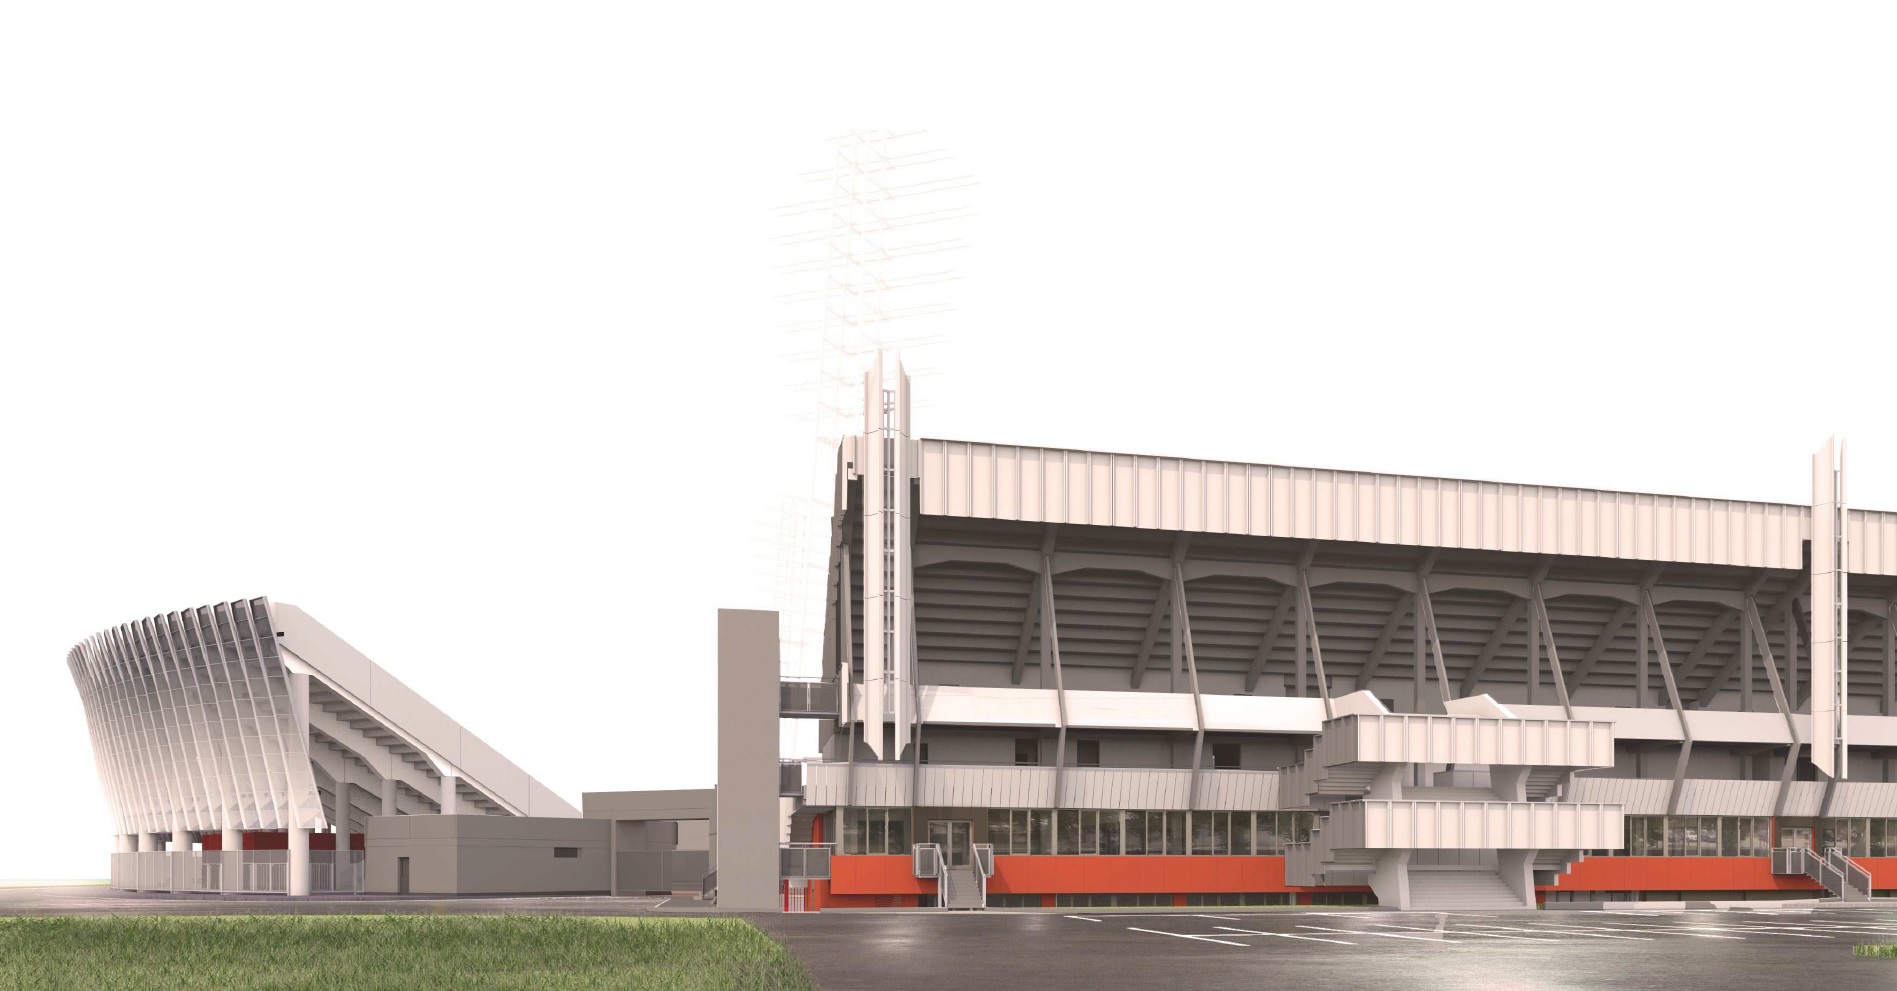 Daugavas stadions aicina Rīgas apkaimju aktīvistus un iedzīvotājus iesaistīties stadiona ikdienas pakalpojumu plānošanas procesā.